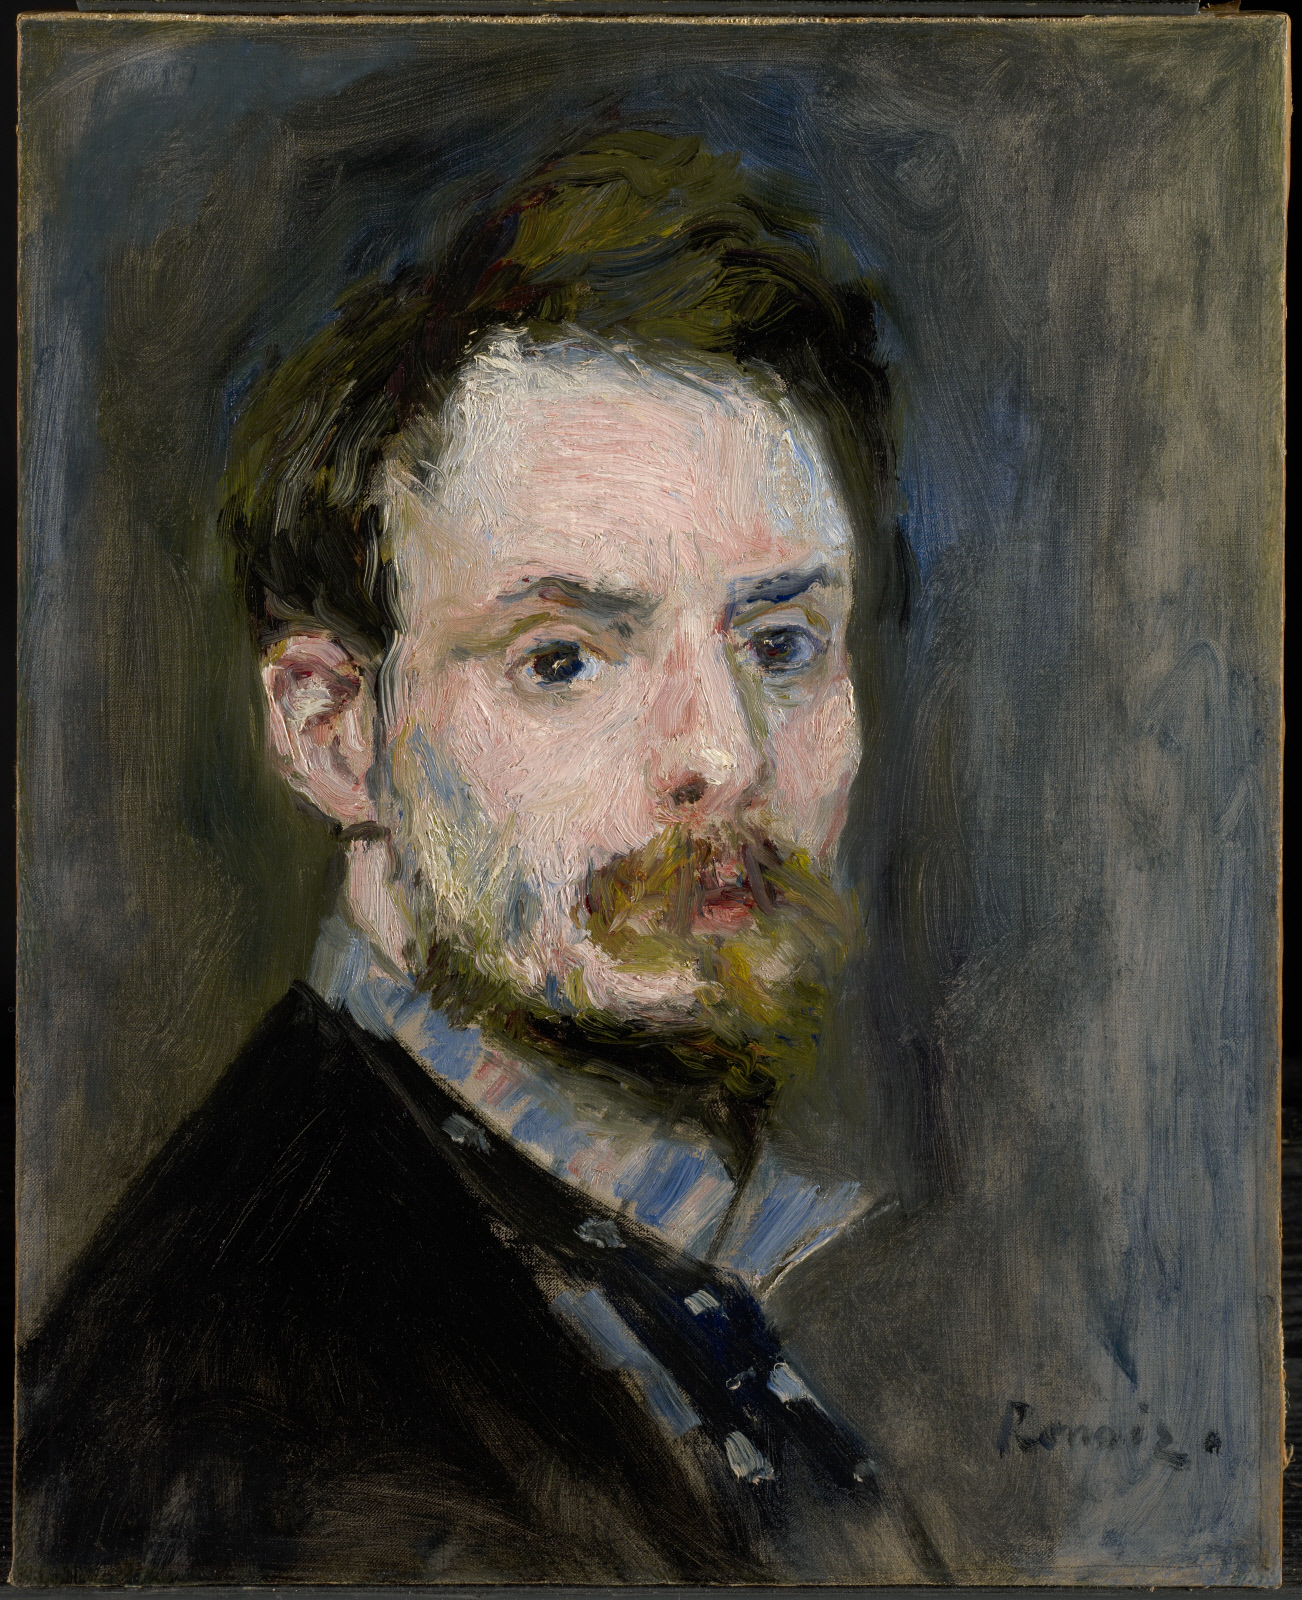 自畫像 by Pierre-Auguste Renoir - c. 1875 - 39.1 x 31.6 cm 